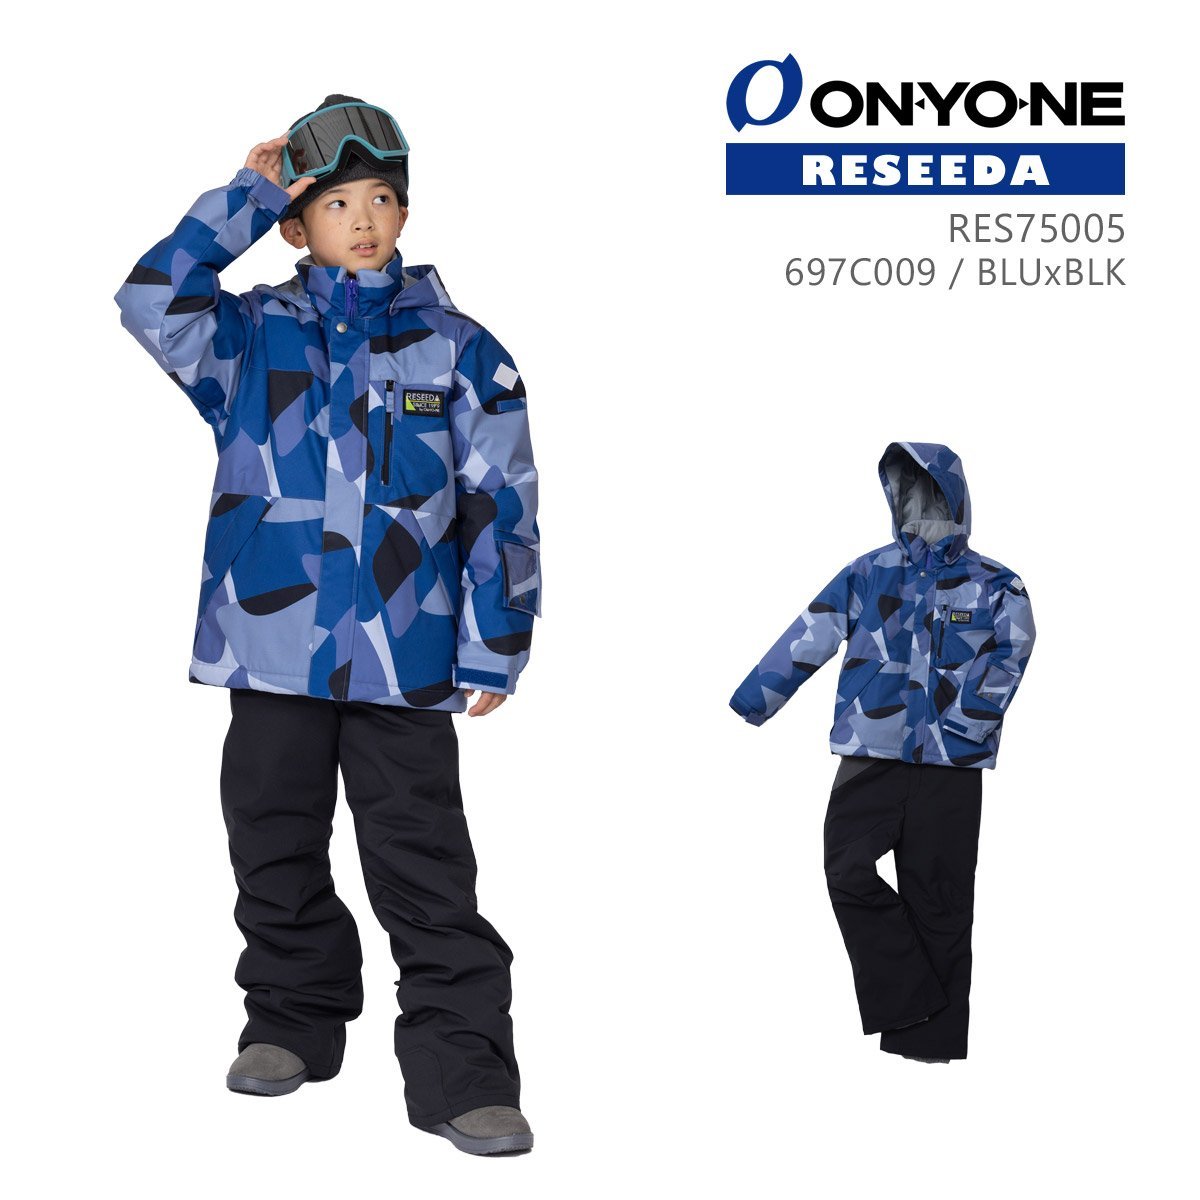 1430527-ONYONE/JUNIOR SUIT ジュニア スキーウェア 上下セット 子供用 スノースーツ/16